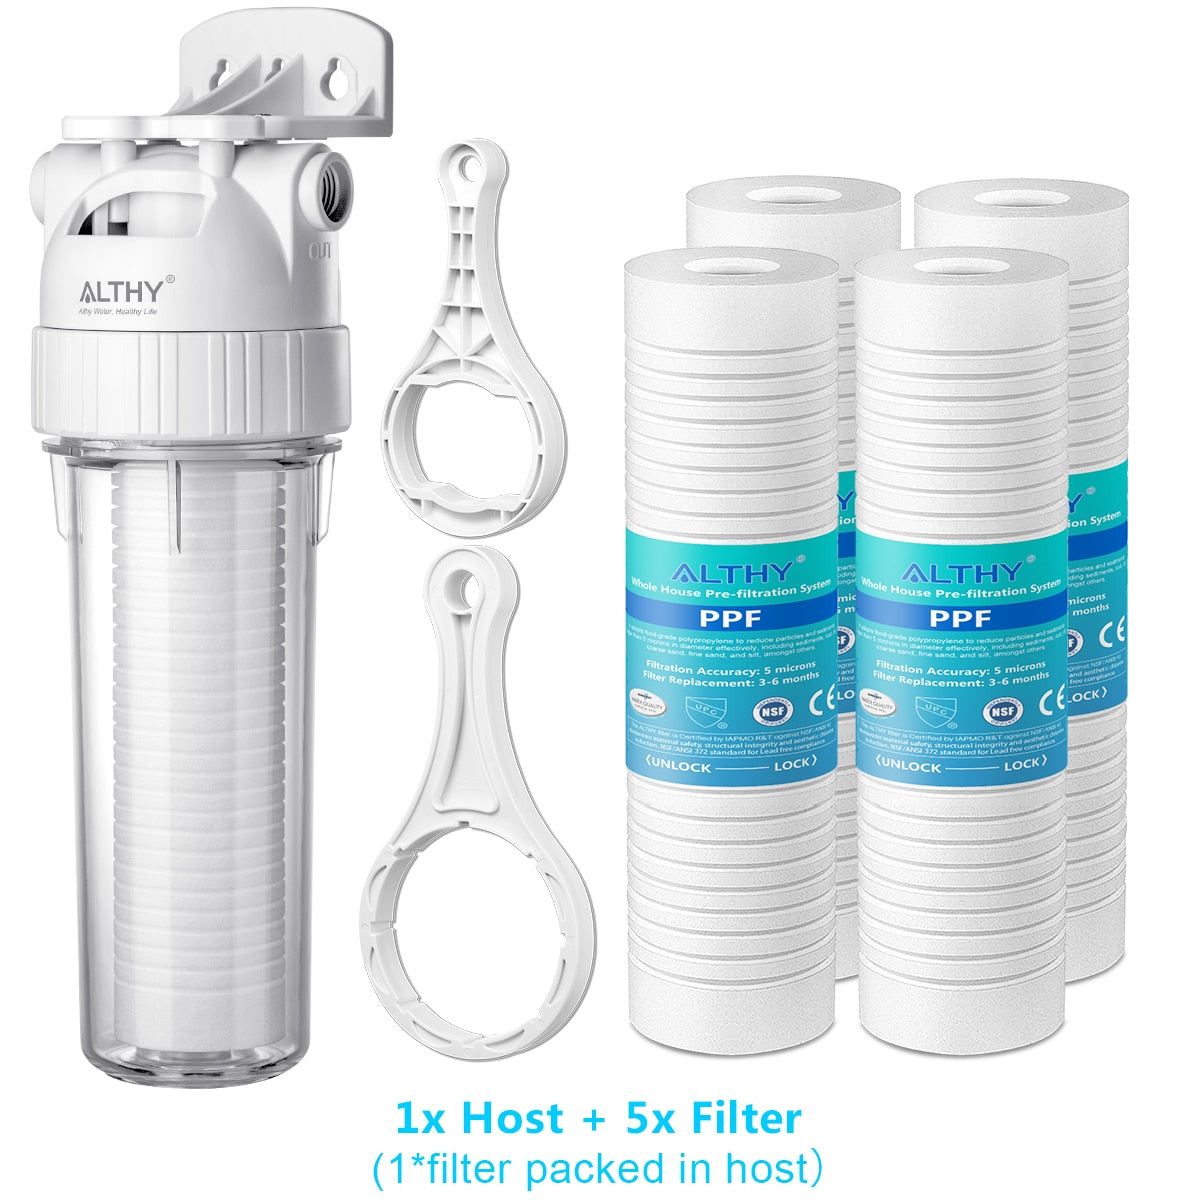 ALTHY 5-микронная система фильтрации воды для всего дома, очиститель предварительной очистки, 10-дюймовый предварительный фильтр из хлопка PPF